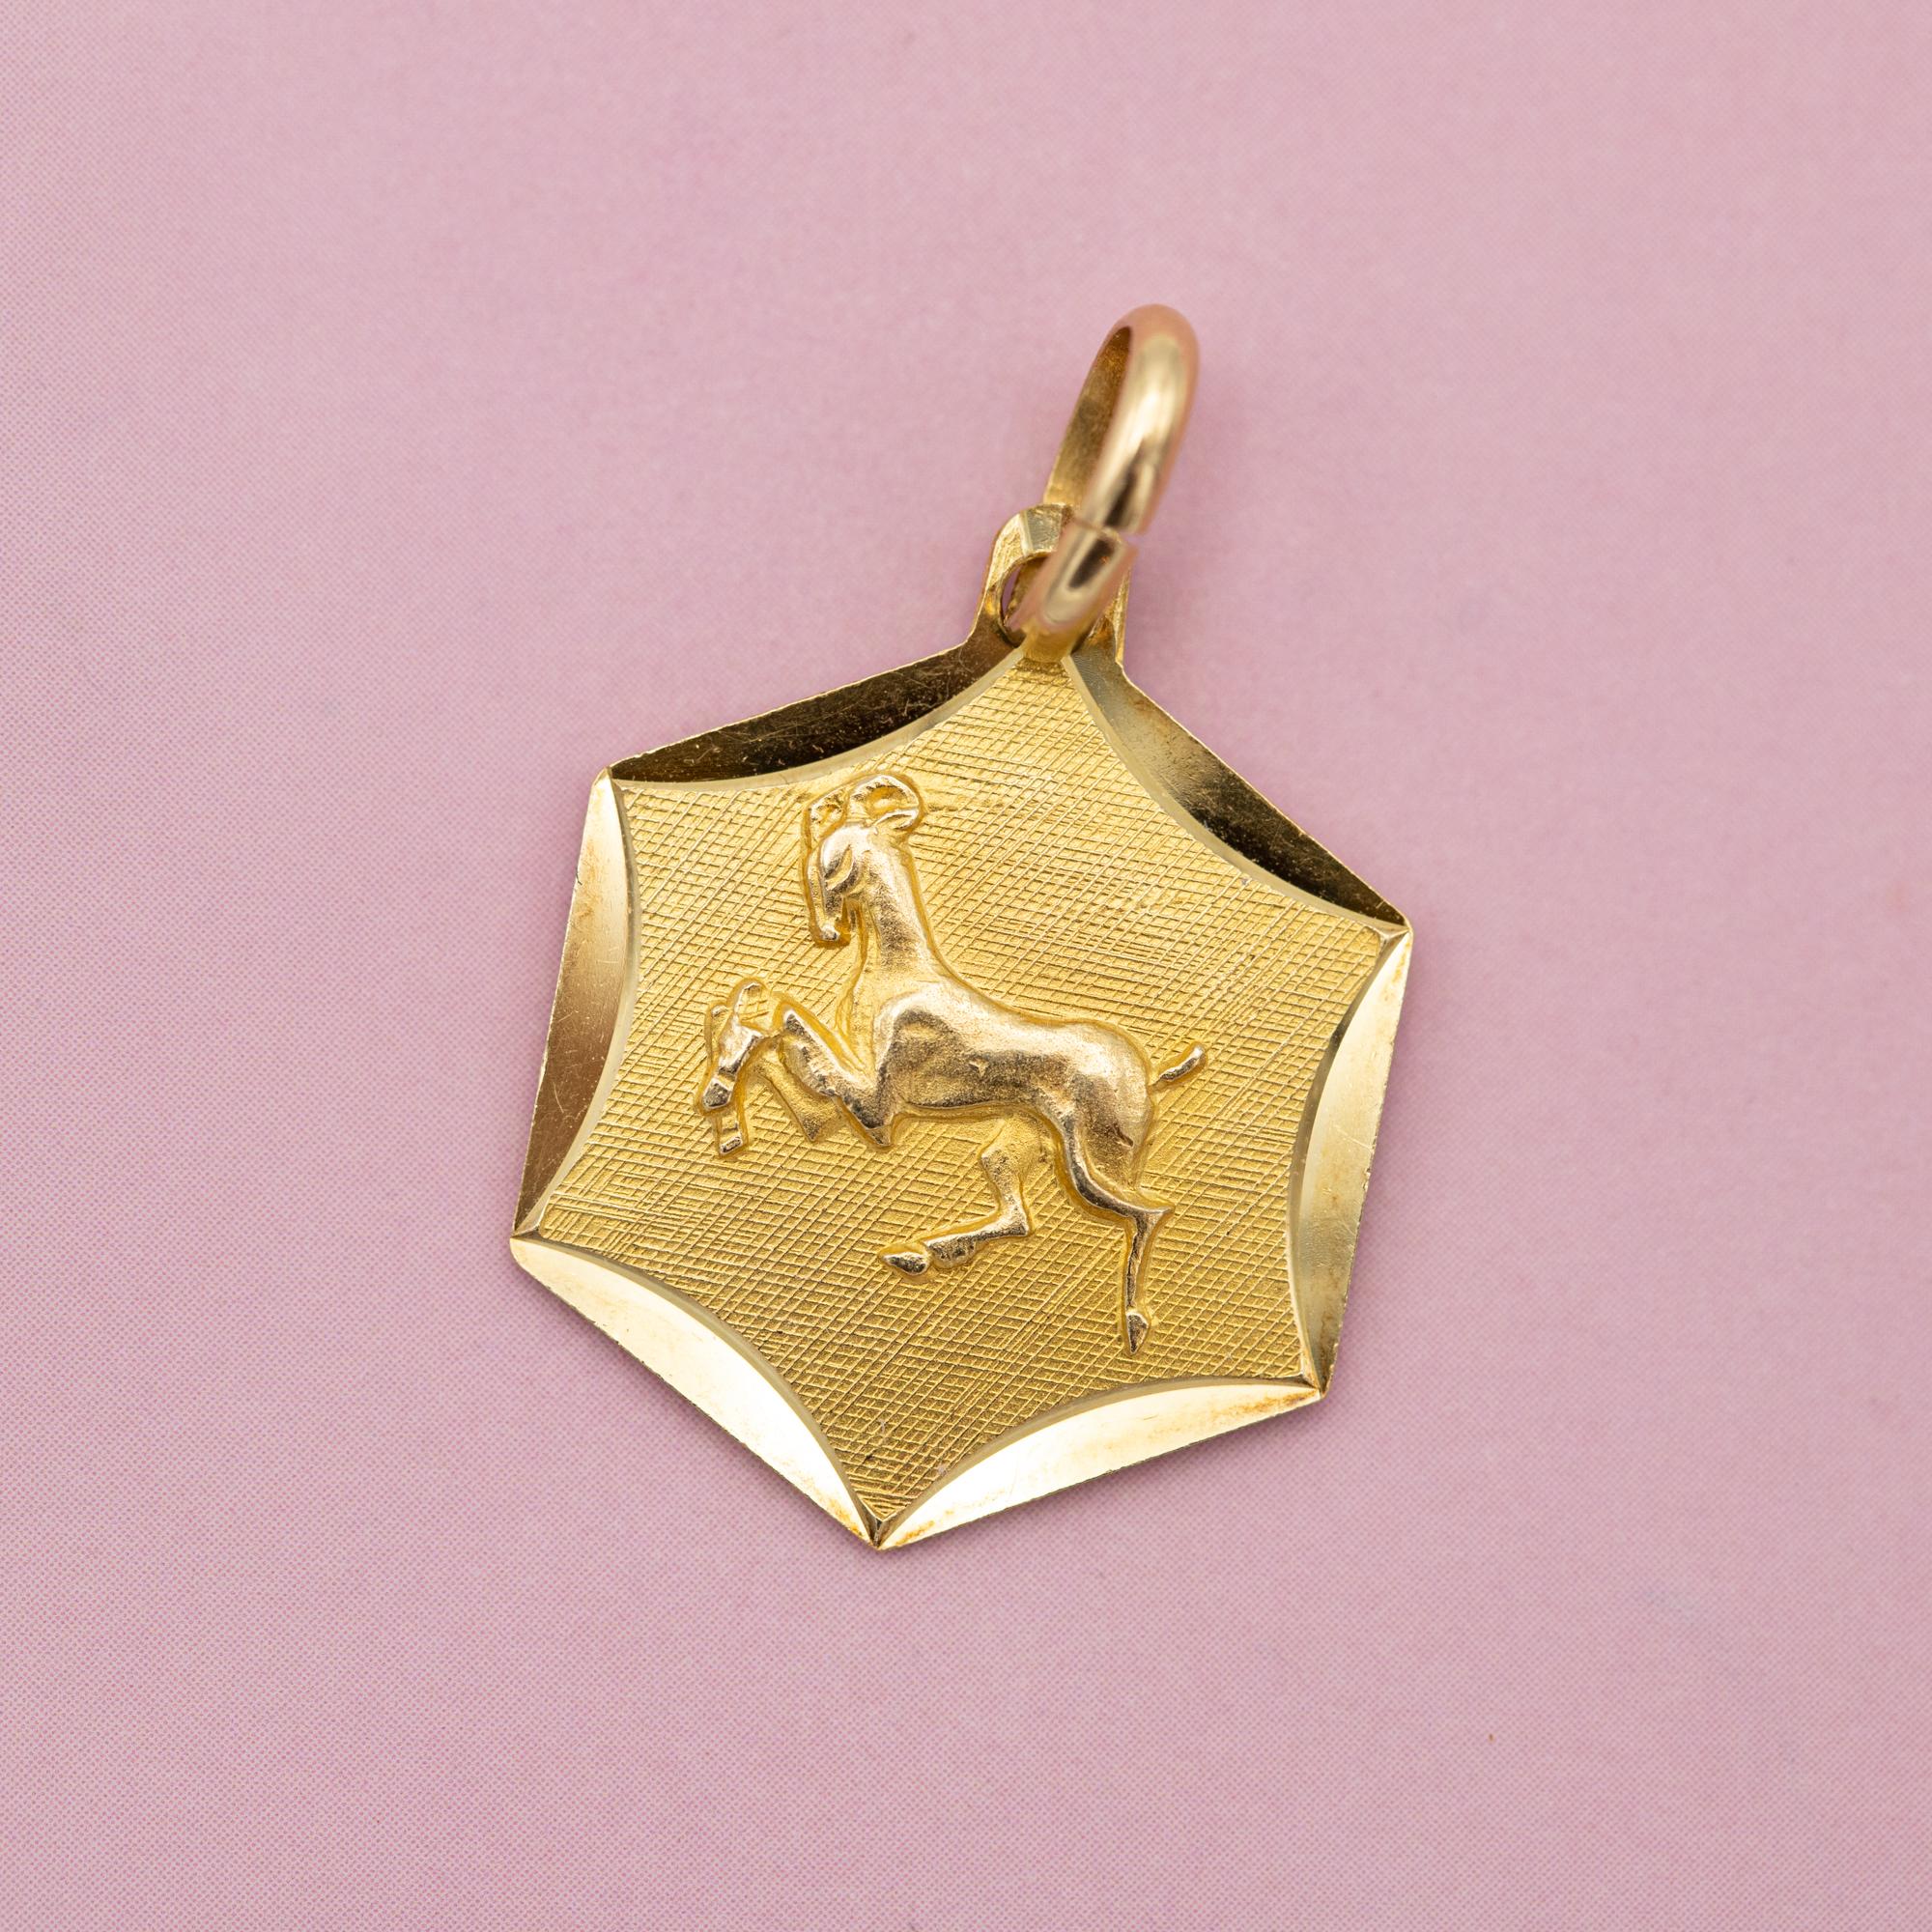 Zum Verkauf steht dieser Vintage-Charme, der einen Widder, das erste astrologische Zeichen des Zodiacs, darstellt. Dieser Sternzeichen-Anhänger ist mit den Geburtsdaten zwischen dem 21. März und dem 20. April verbunden. Dieser hübsche Charme ist mit